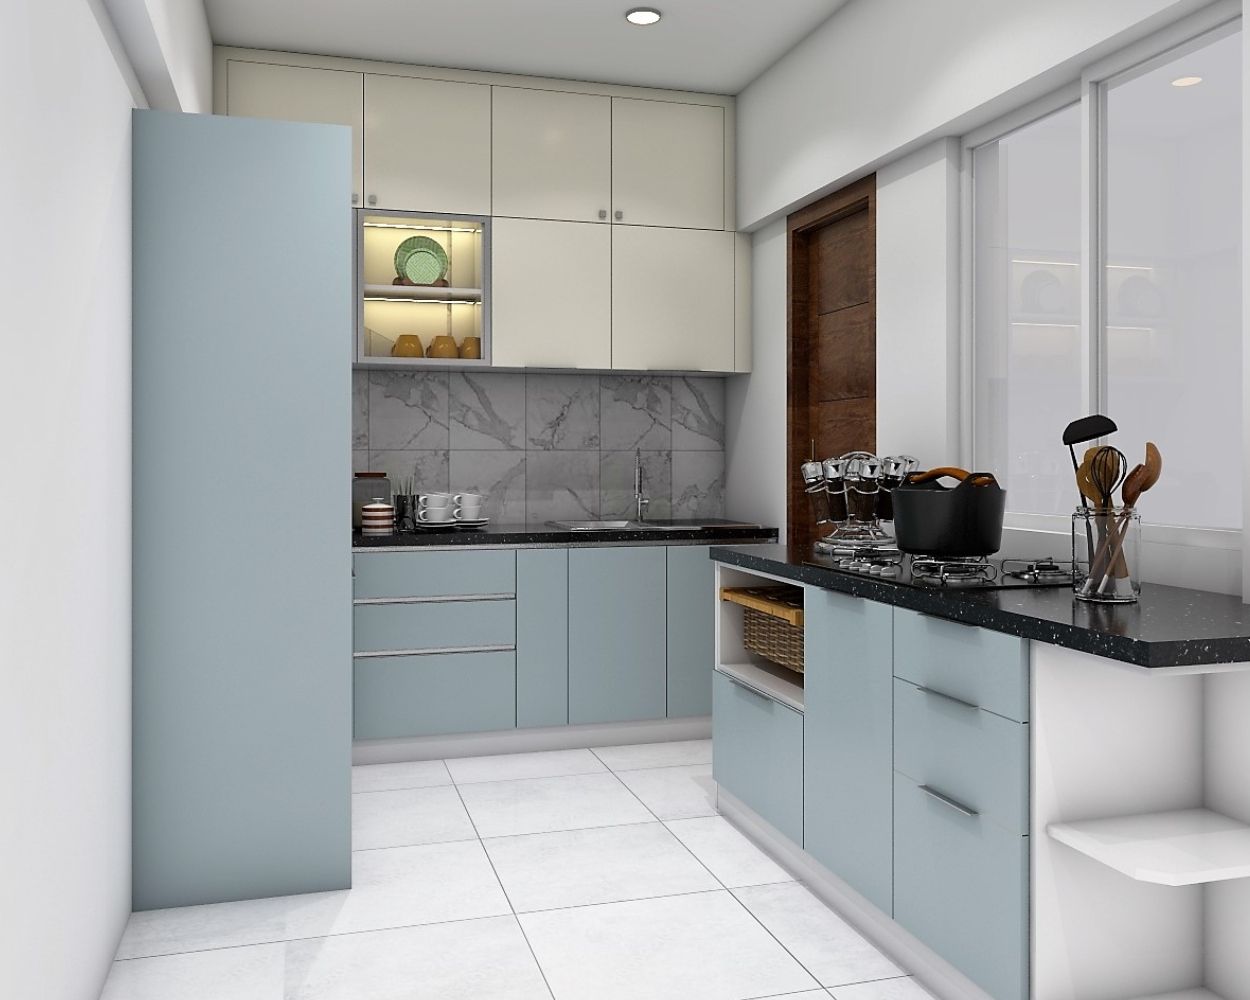 Contemporary Modular Kitchen Design With Loft Storage